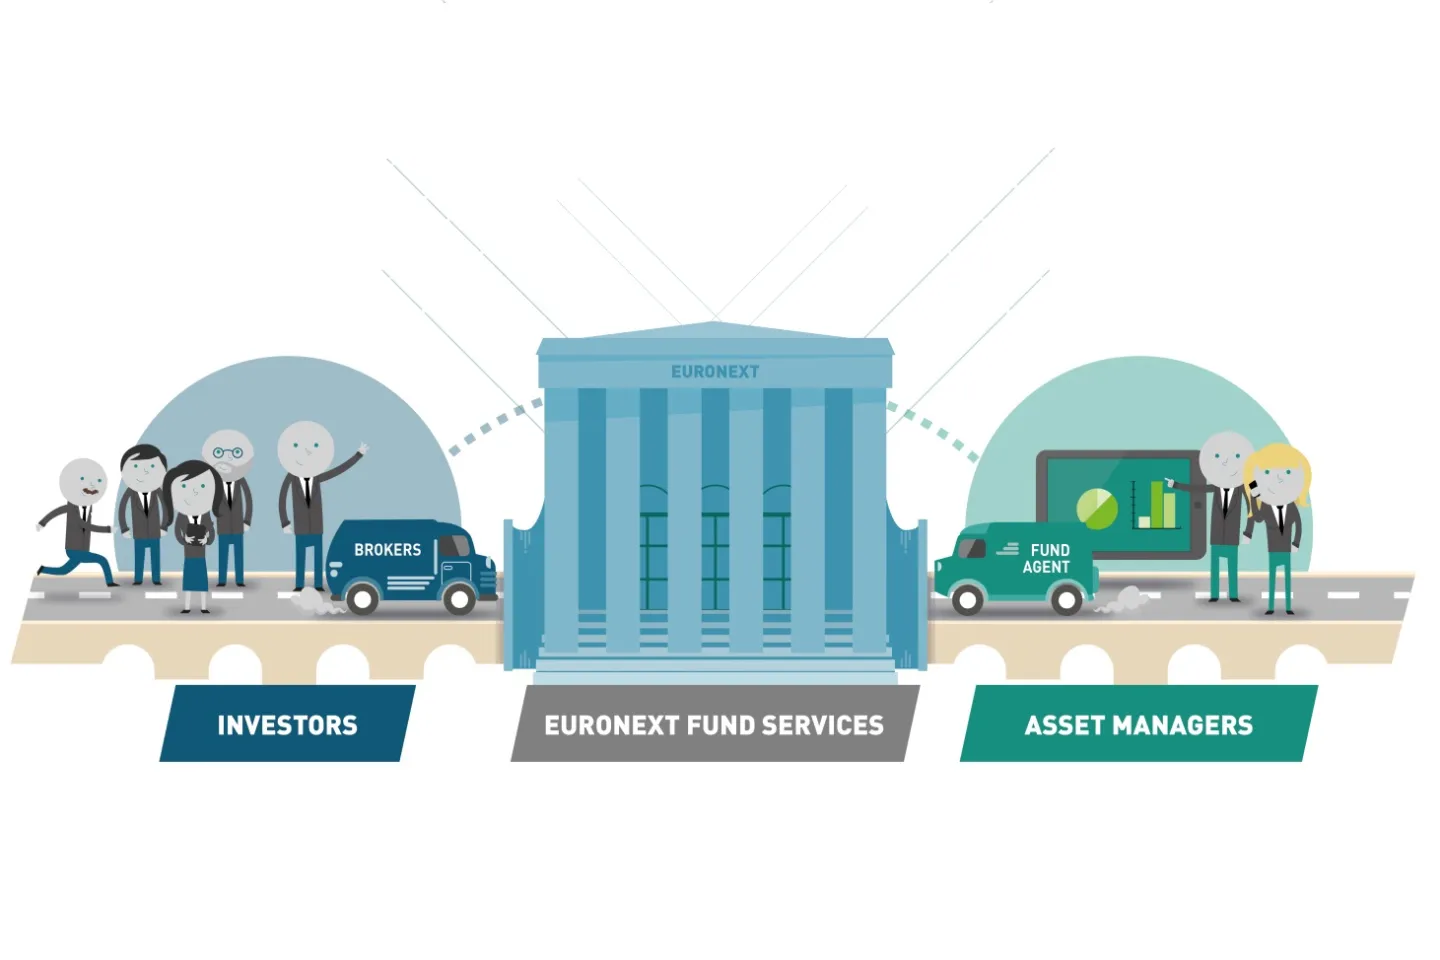 Euronext fund service